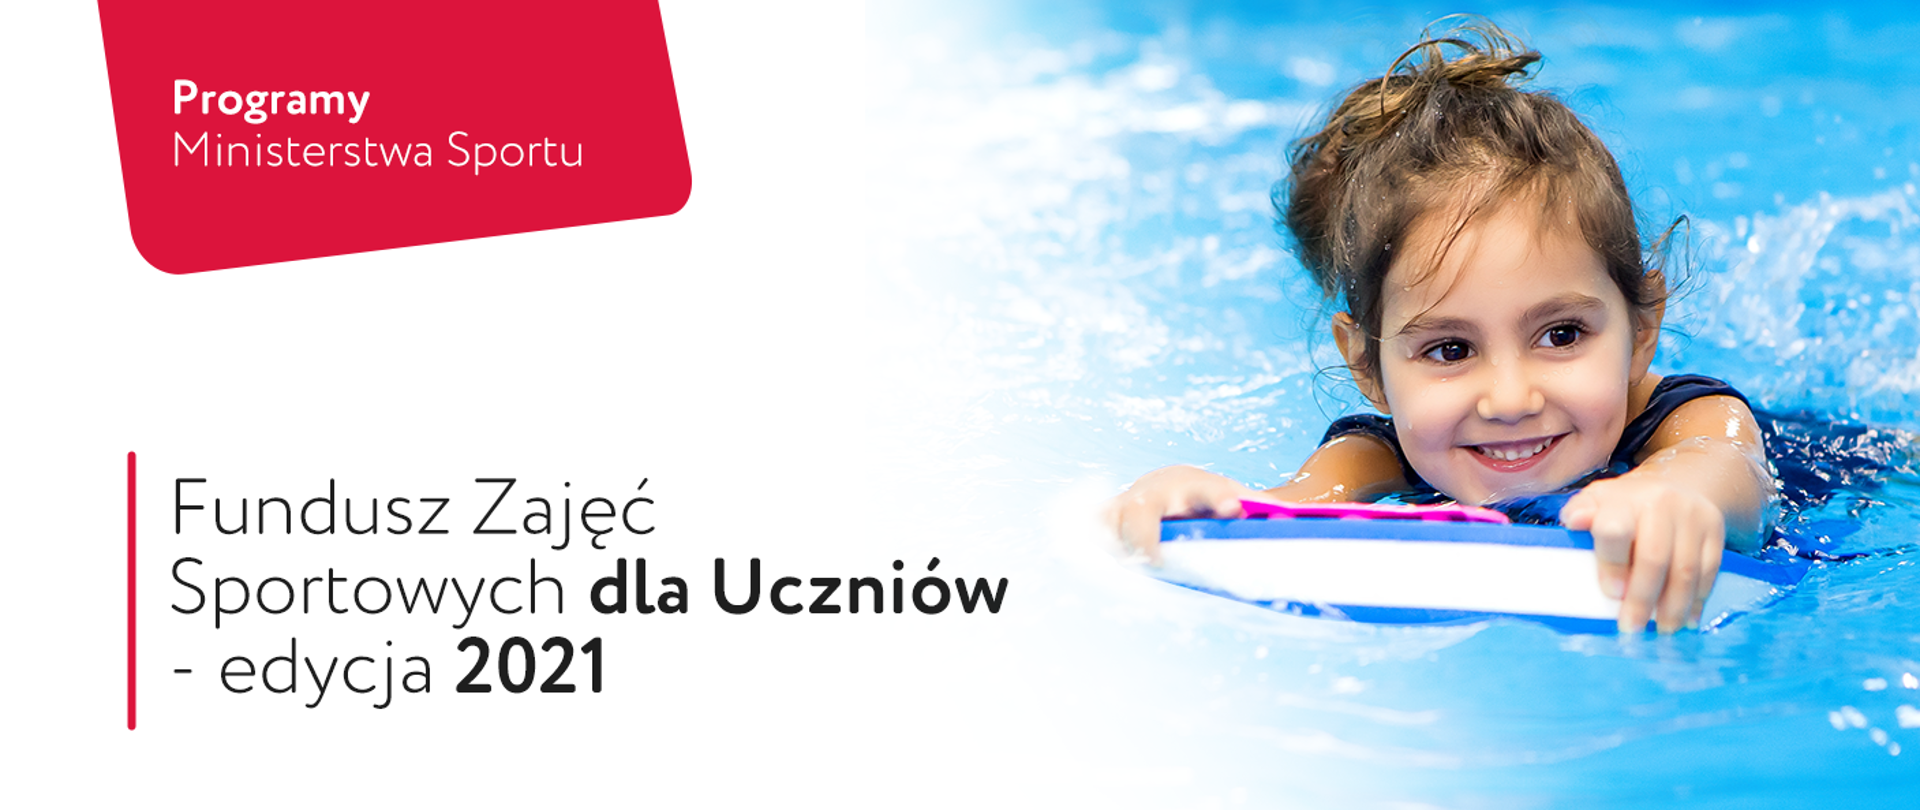 Programy Ministerstwa Sportu. Fundusz Zajęć Sportowych dla Uczniów - edycja 2021. Po prawej stronie dziewczynka podczas lekcji pływania.